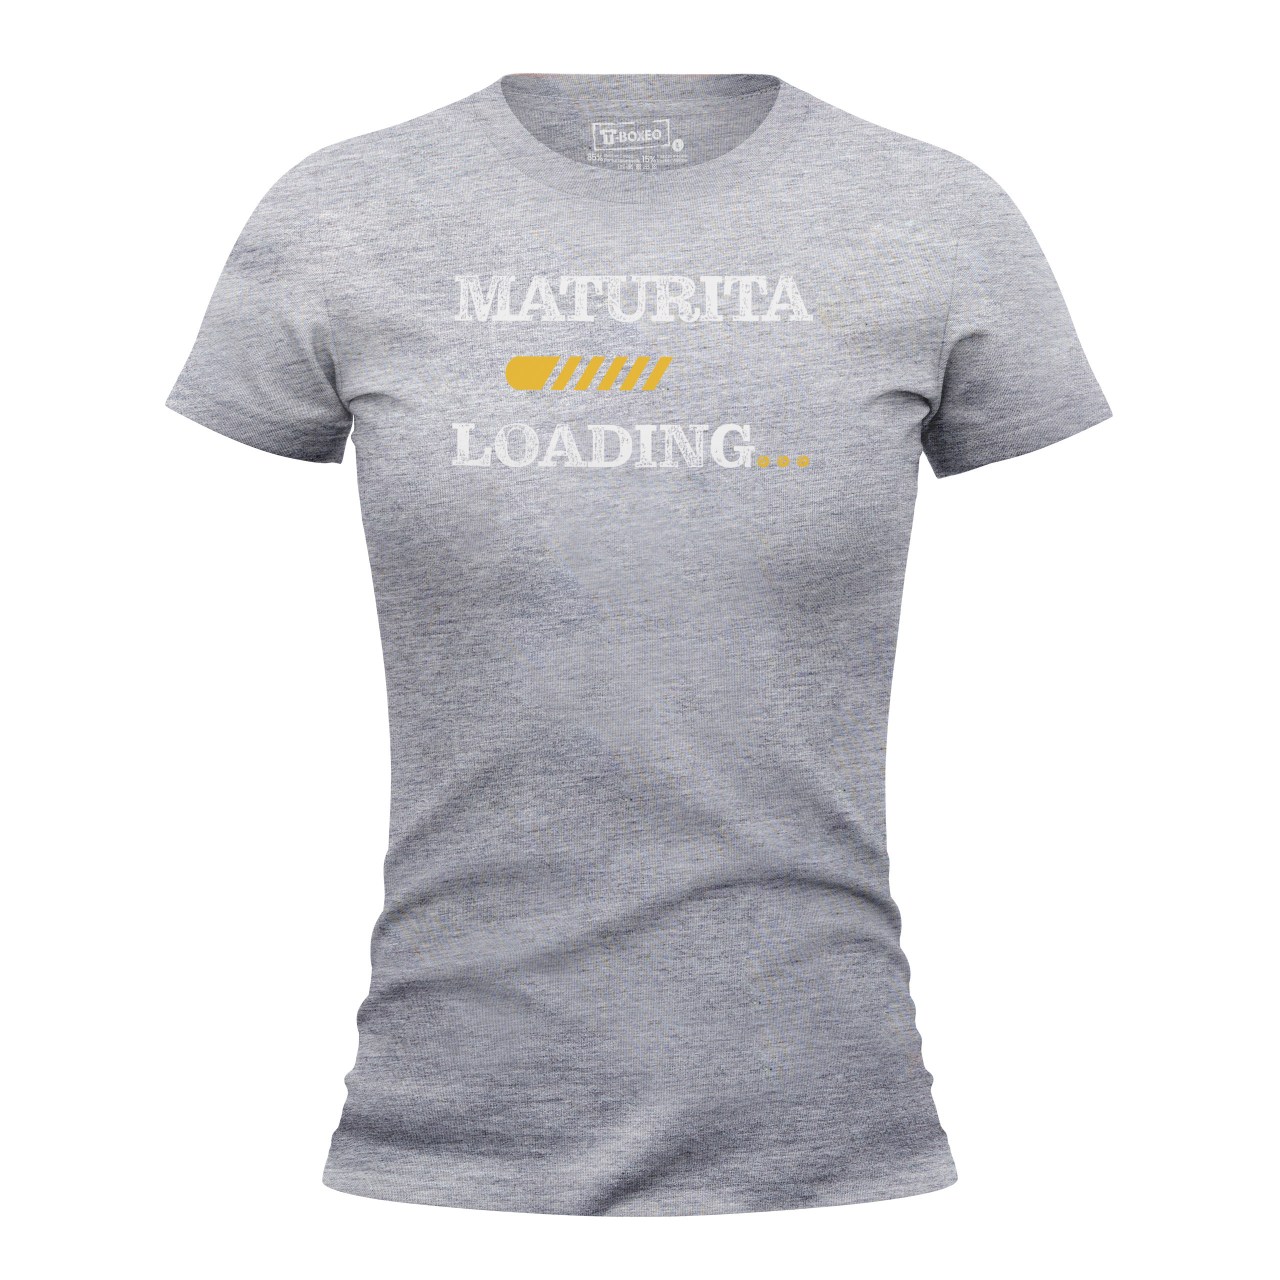 Dámské tričko s potiskem “Maturita loading”